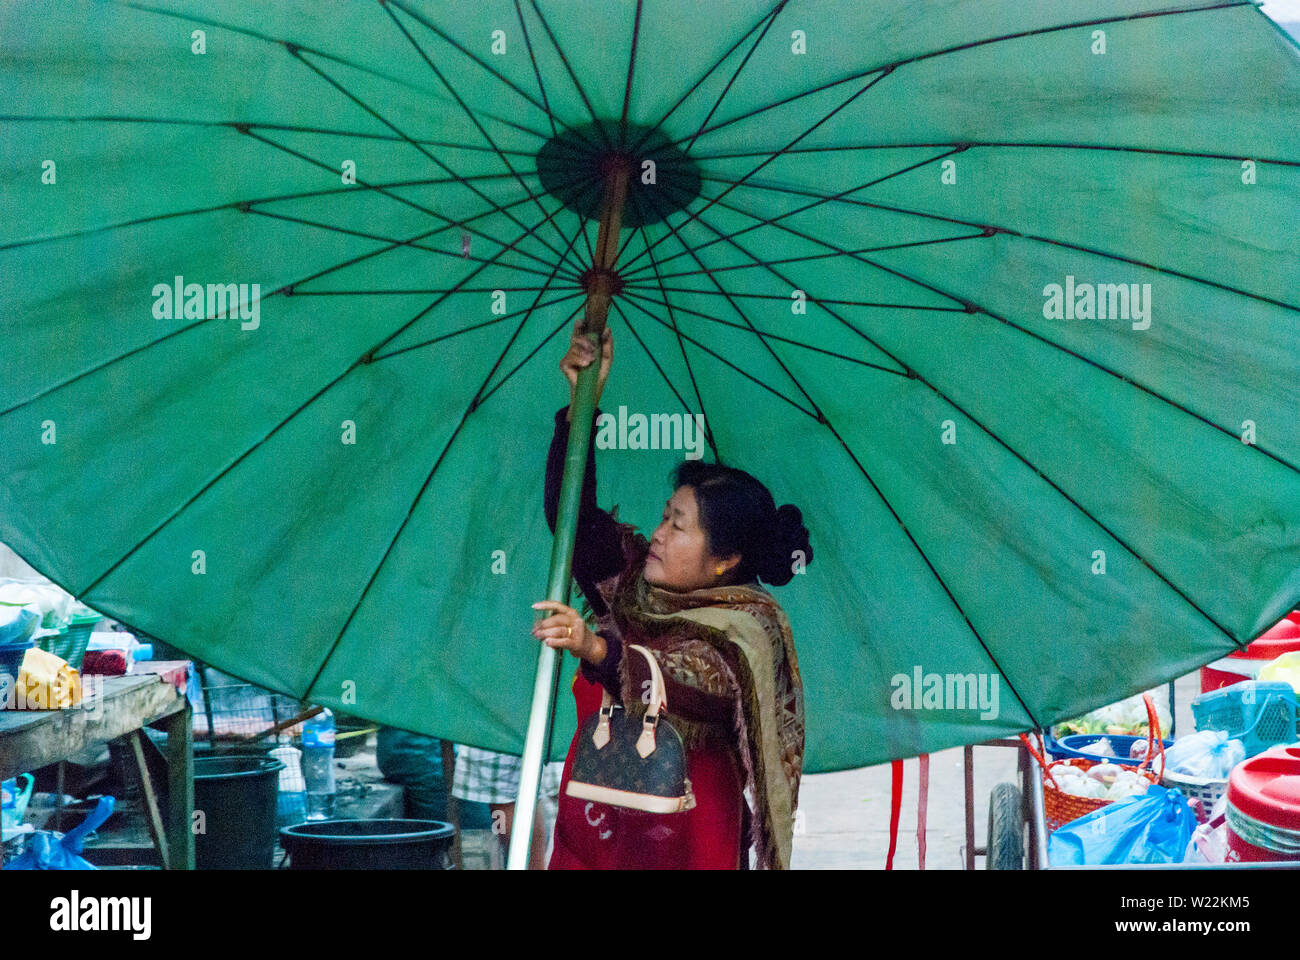 Giant umbrella immagini e fotografie stock ad alta risoluzione - Alamy